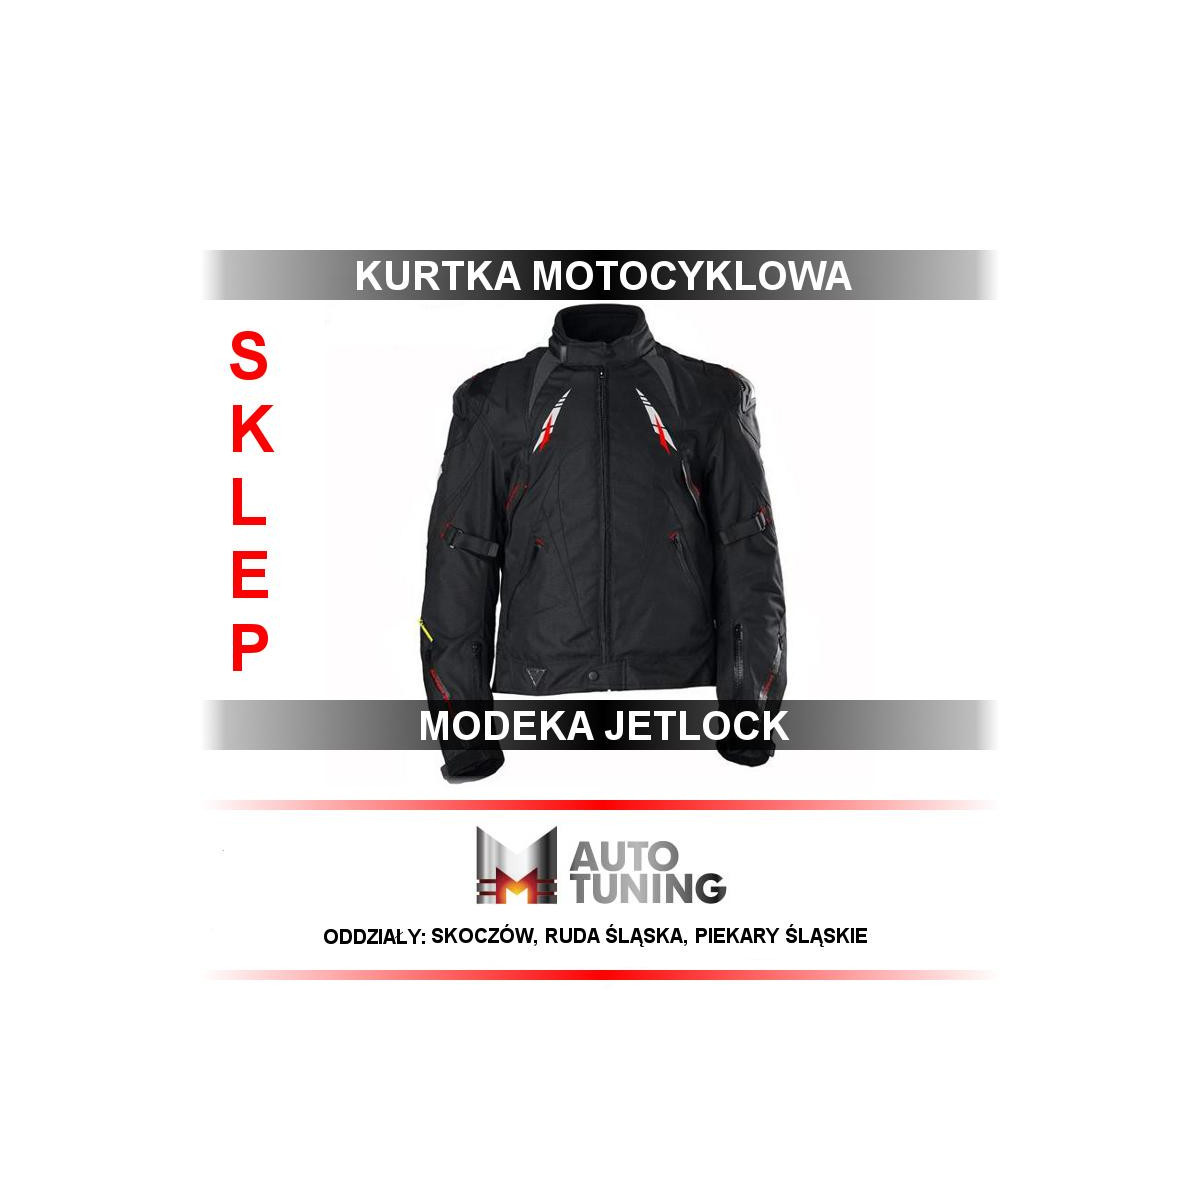 KURTKA MODEKA JETLOCK BLACK / ROZMIAR M